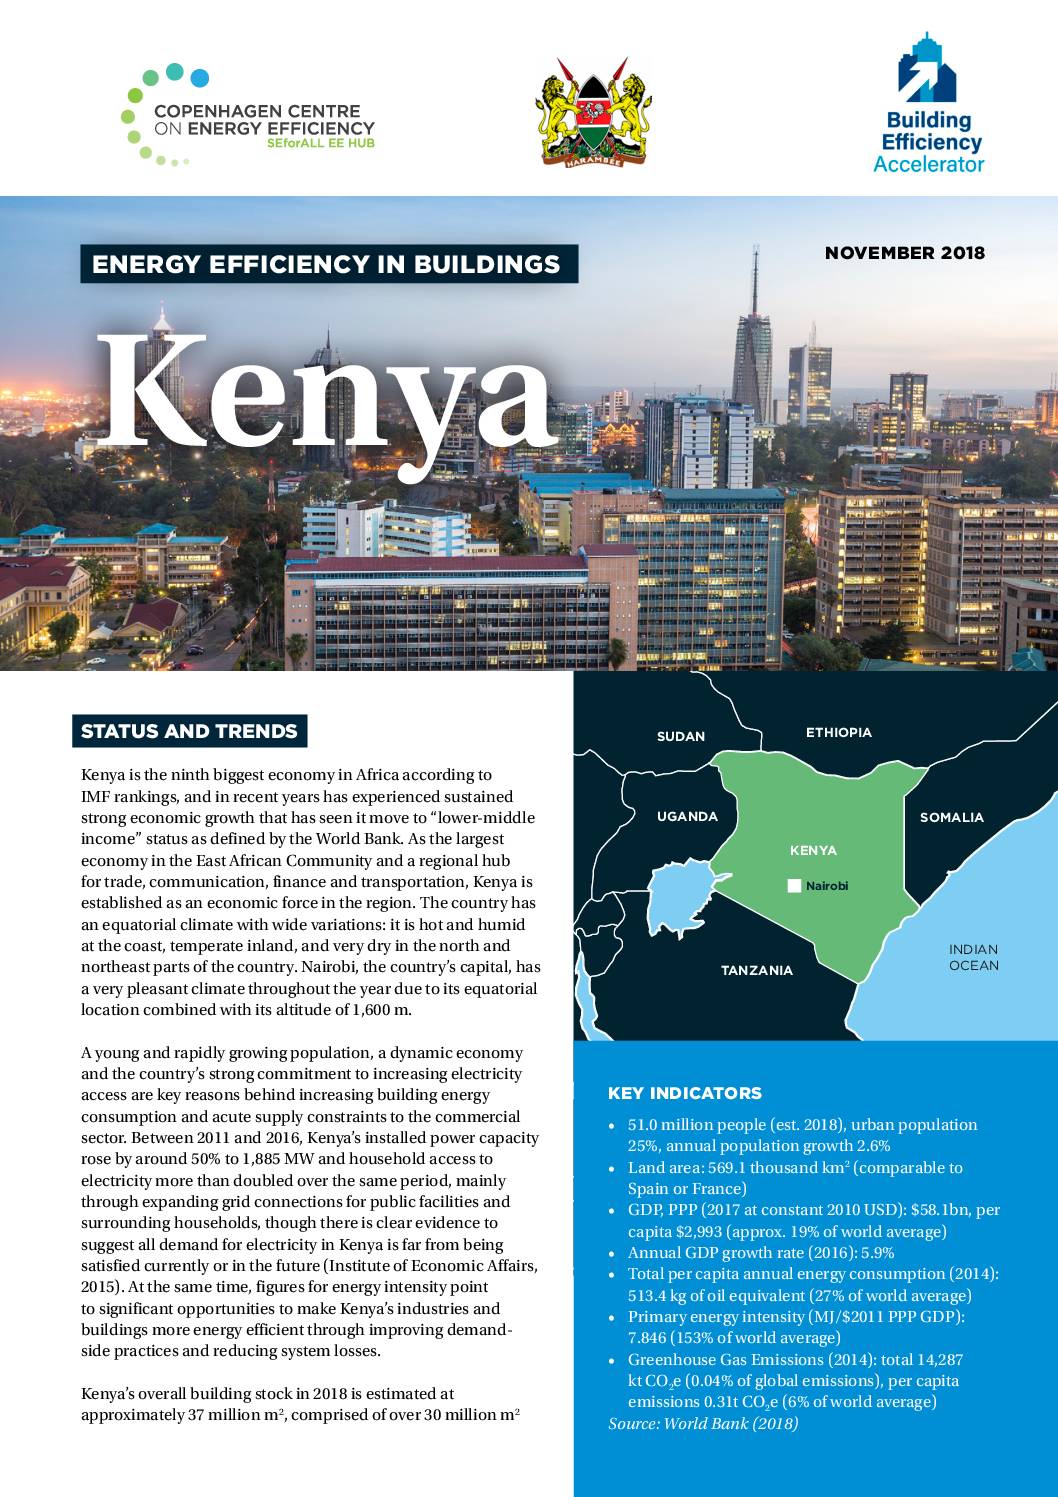 Energy Efficiency in Buildings: Kenya